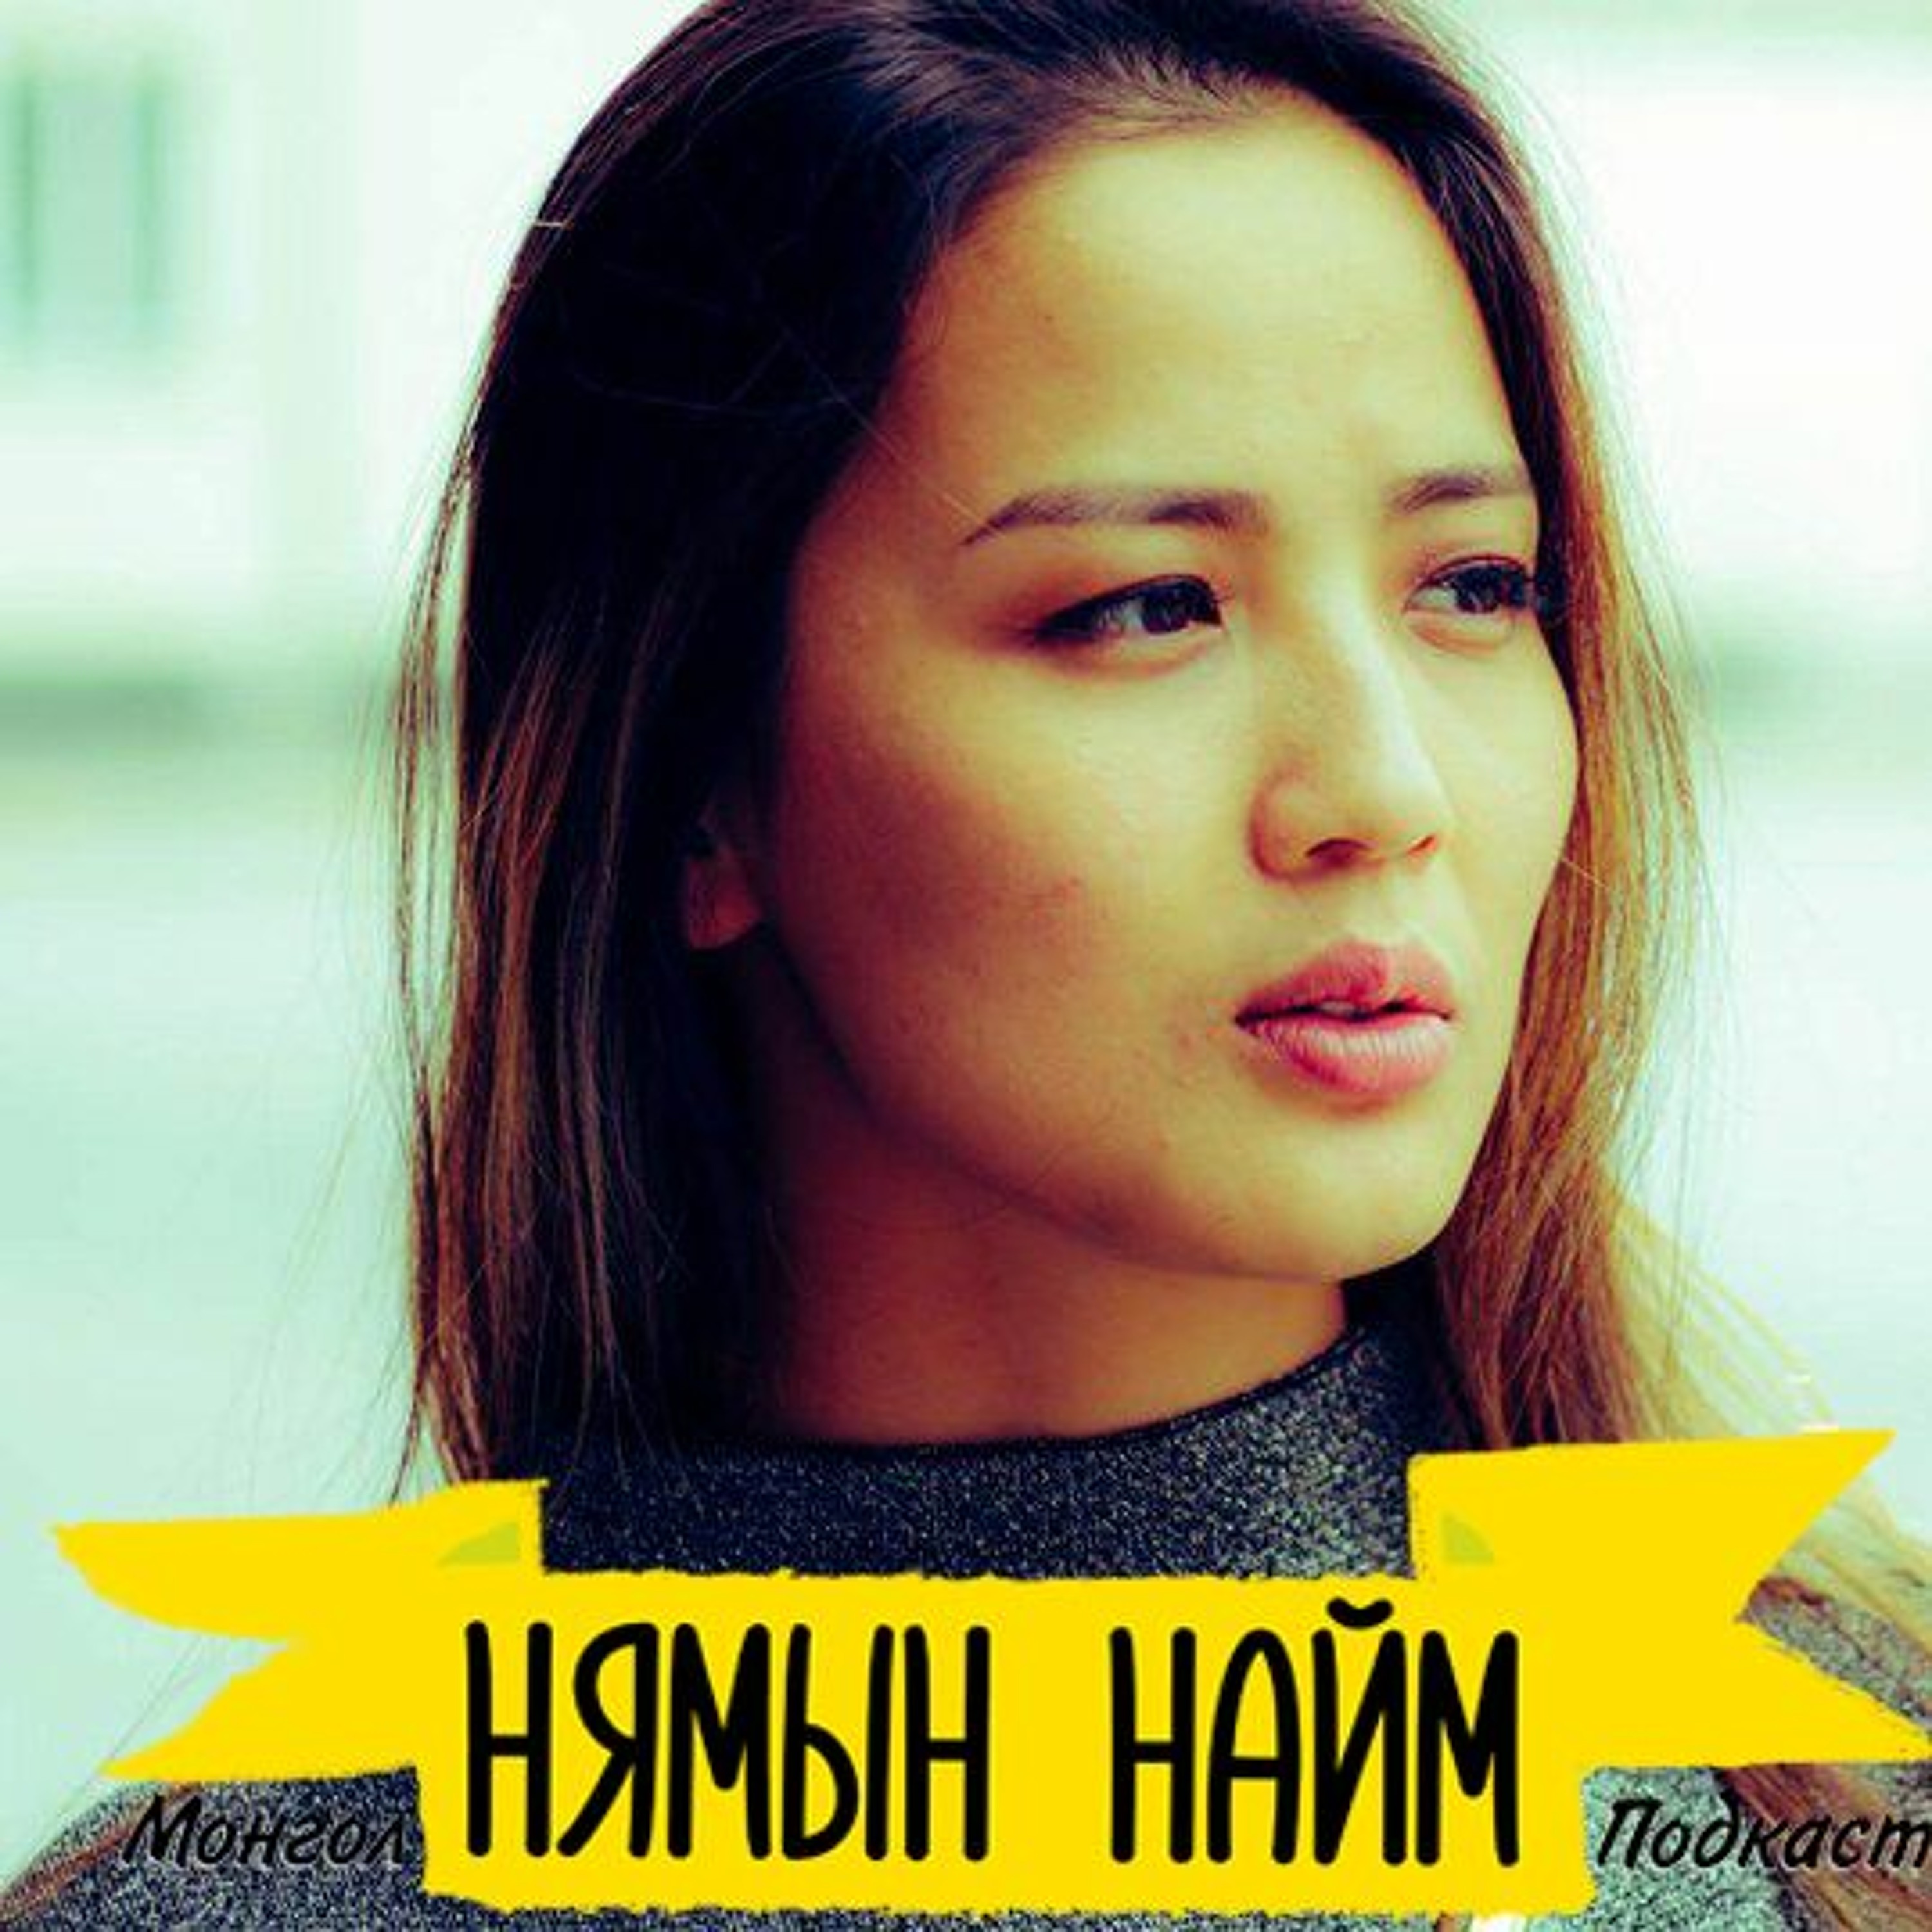 Хүсэл мөрөөдлөө биелүүлэх нууц биш нууц - Э.Дөлгөөн (Positive Mongolians) | HH #20